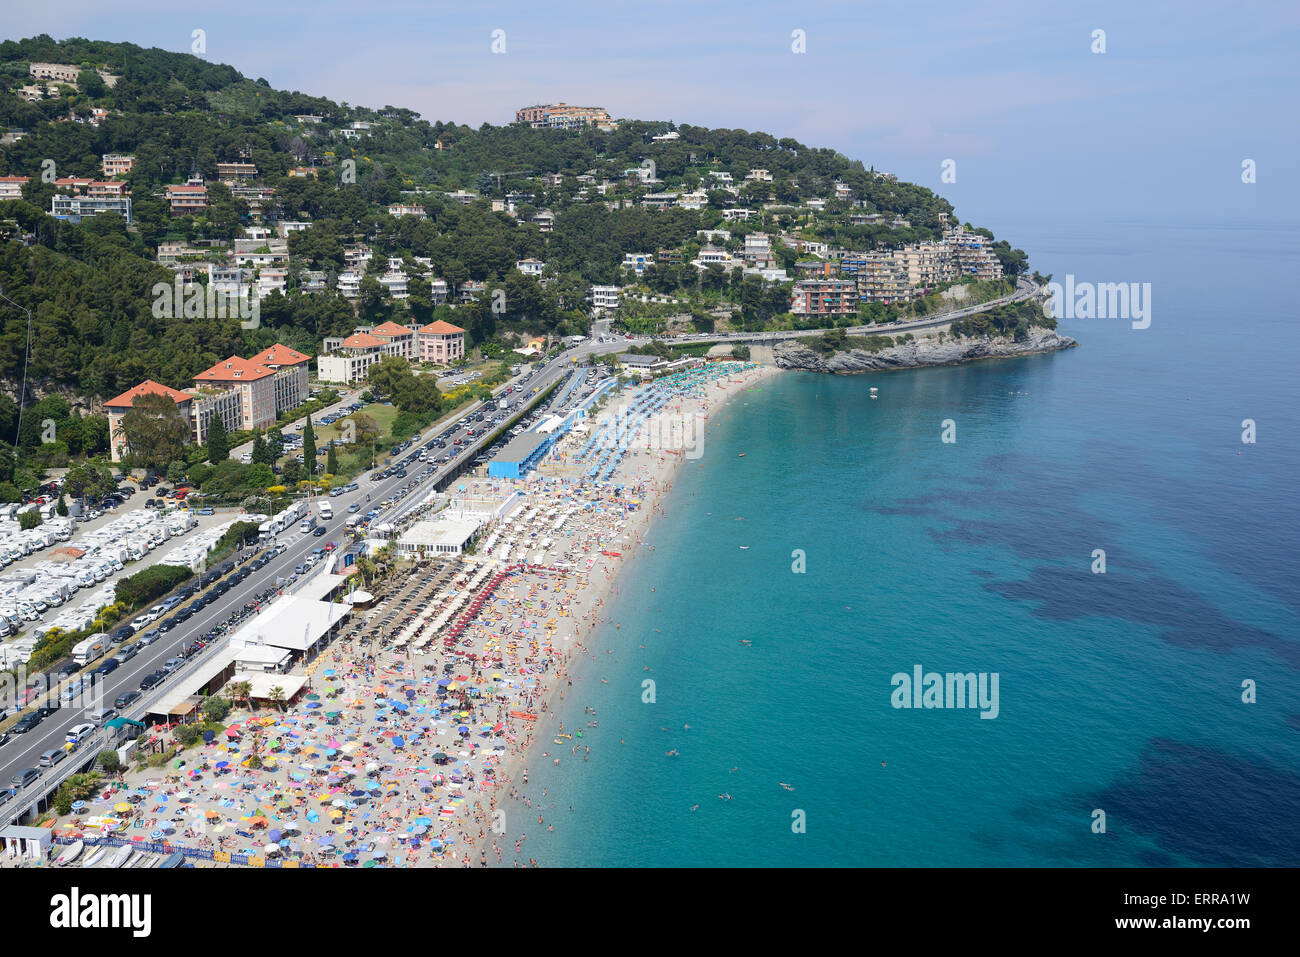 VISTA AEREA. Spiaggia affollata nella città di Bergeggi. Provincia di Savona, Liguria, Italia. Foto Stock